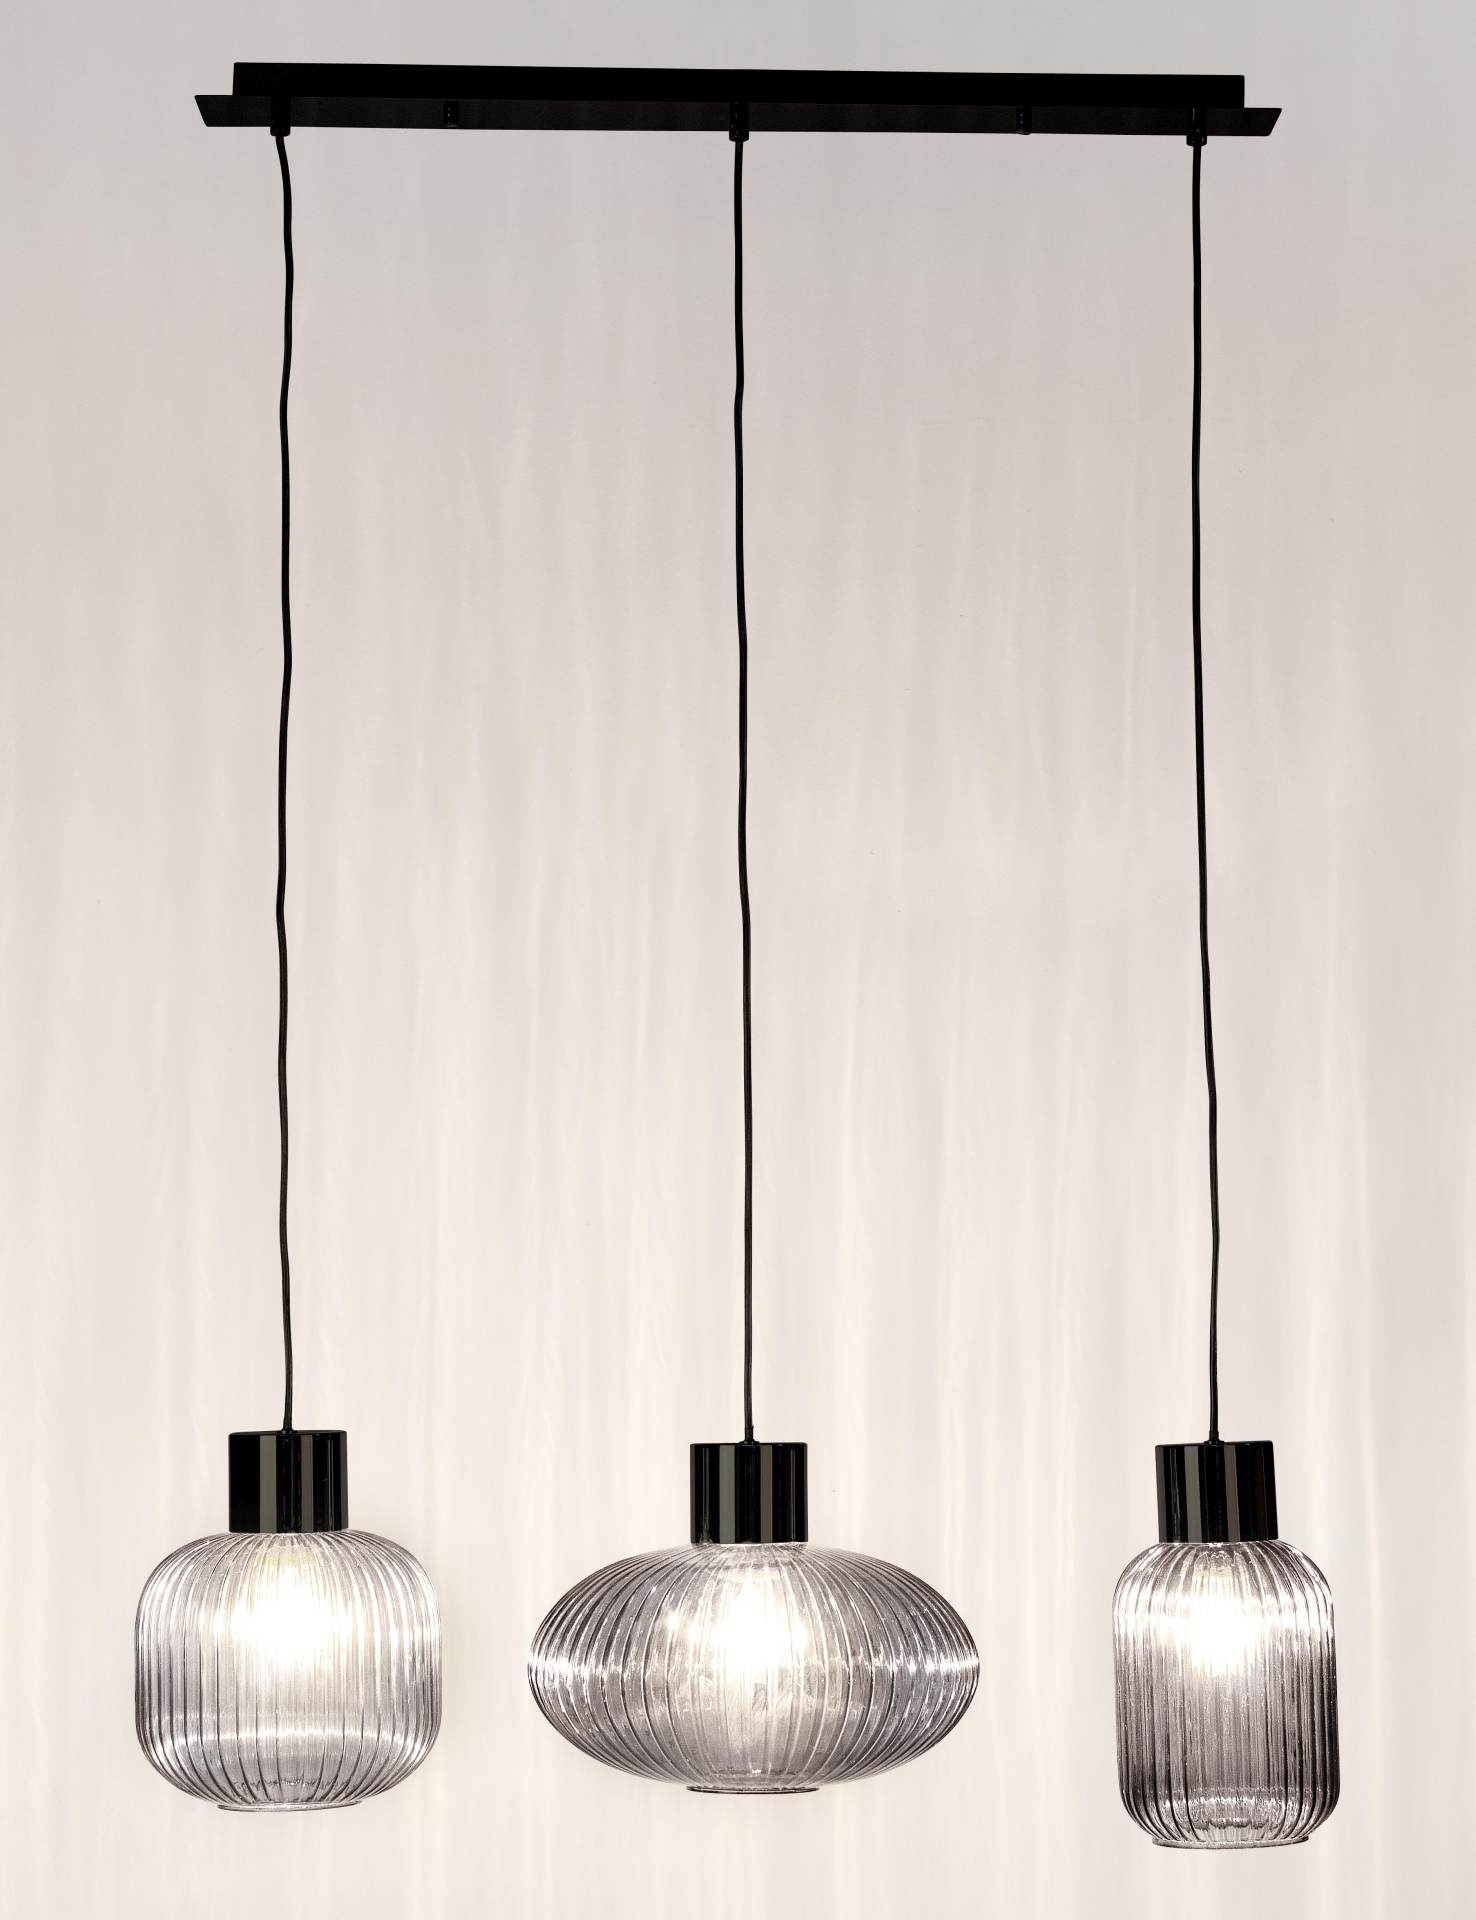 Die Hängeleuchte Showy überzeugt mit ihrem modernen Design. Gefertigt wurde sie aus Metall, welches einen schwarzen Farbton besitzt. Die Lampenschirme sind aus Glas und sind abgedunkelt. Die Lampe besitzt eine Höhe von 120 cm.